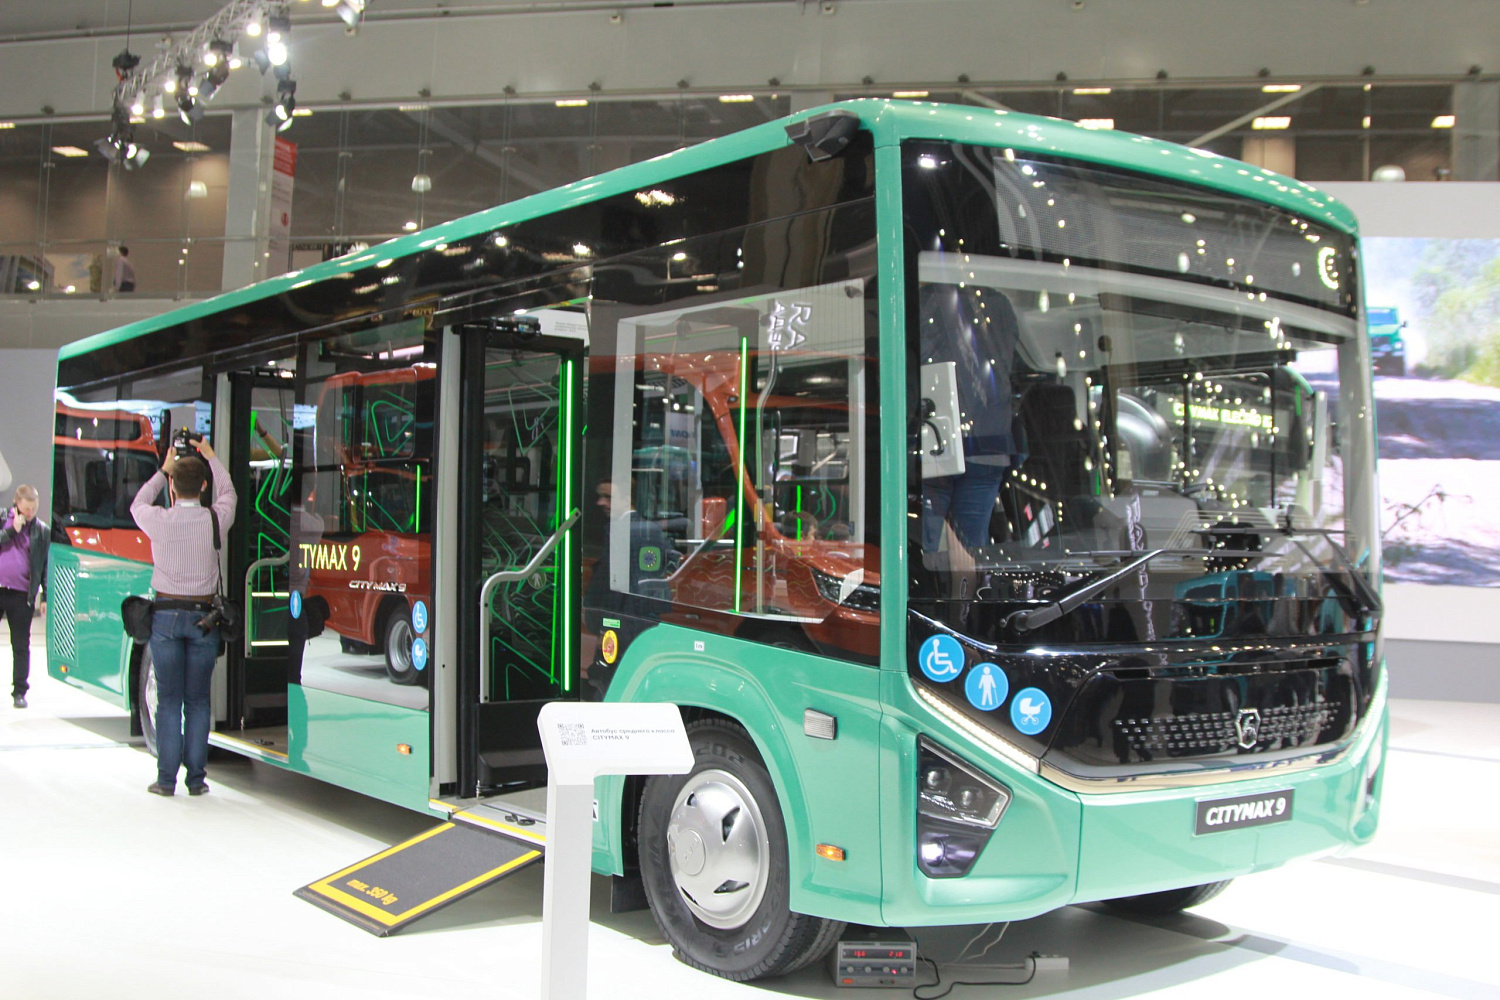 CITYMAX-9 от «Группы ГАЗ» - автобус нового поколения